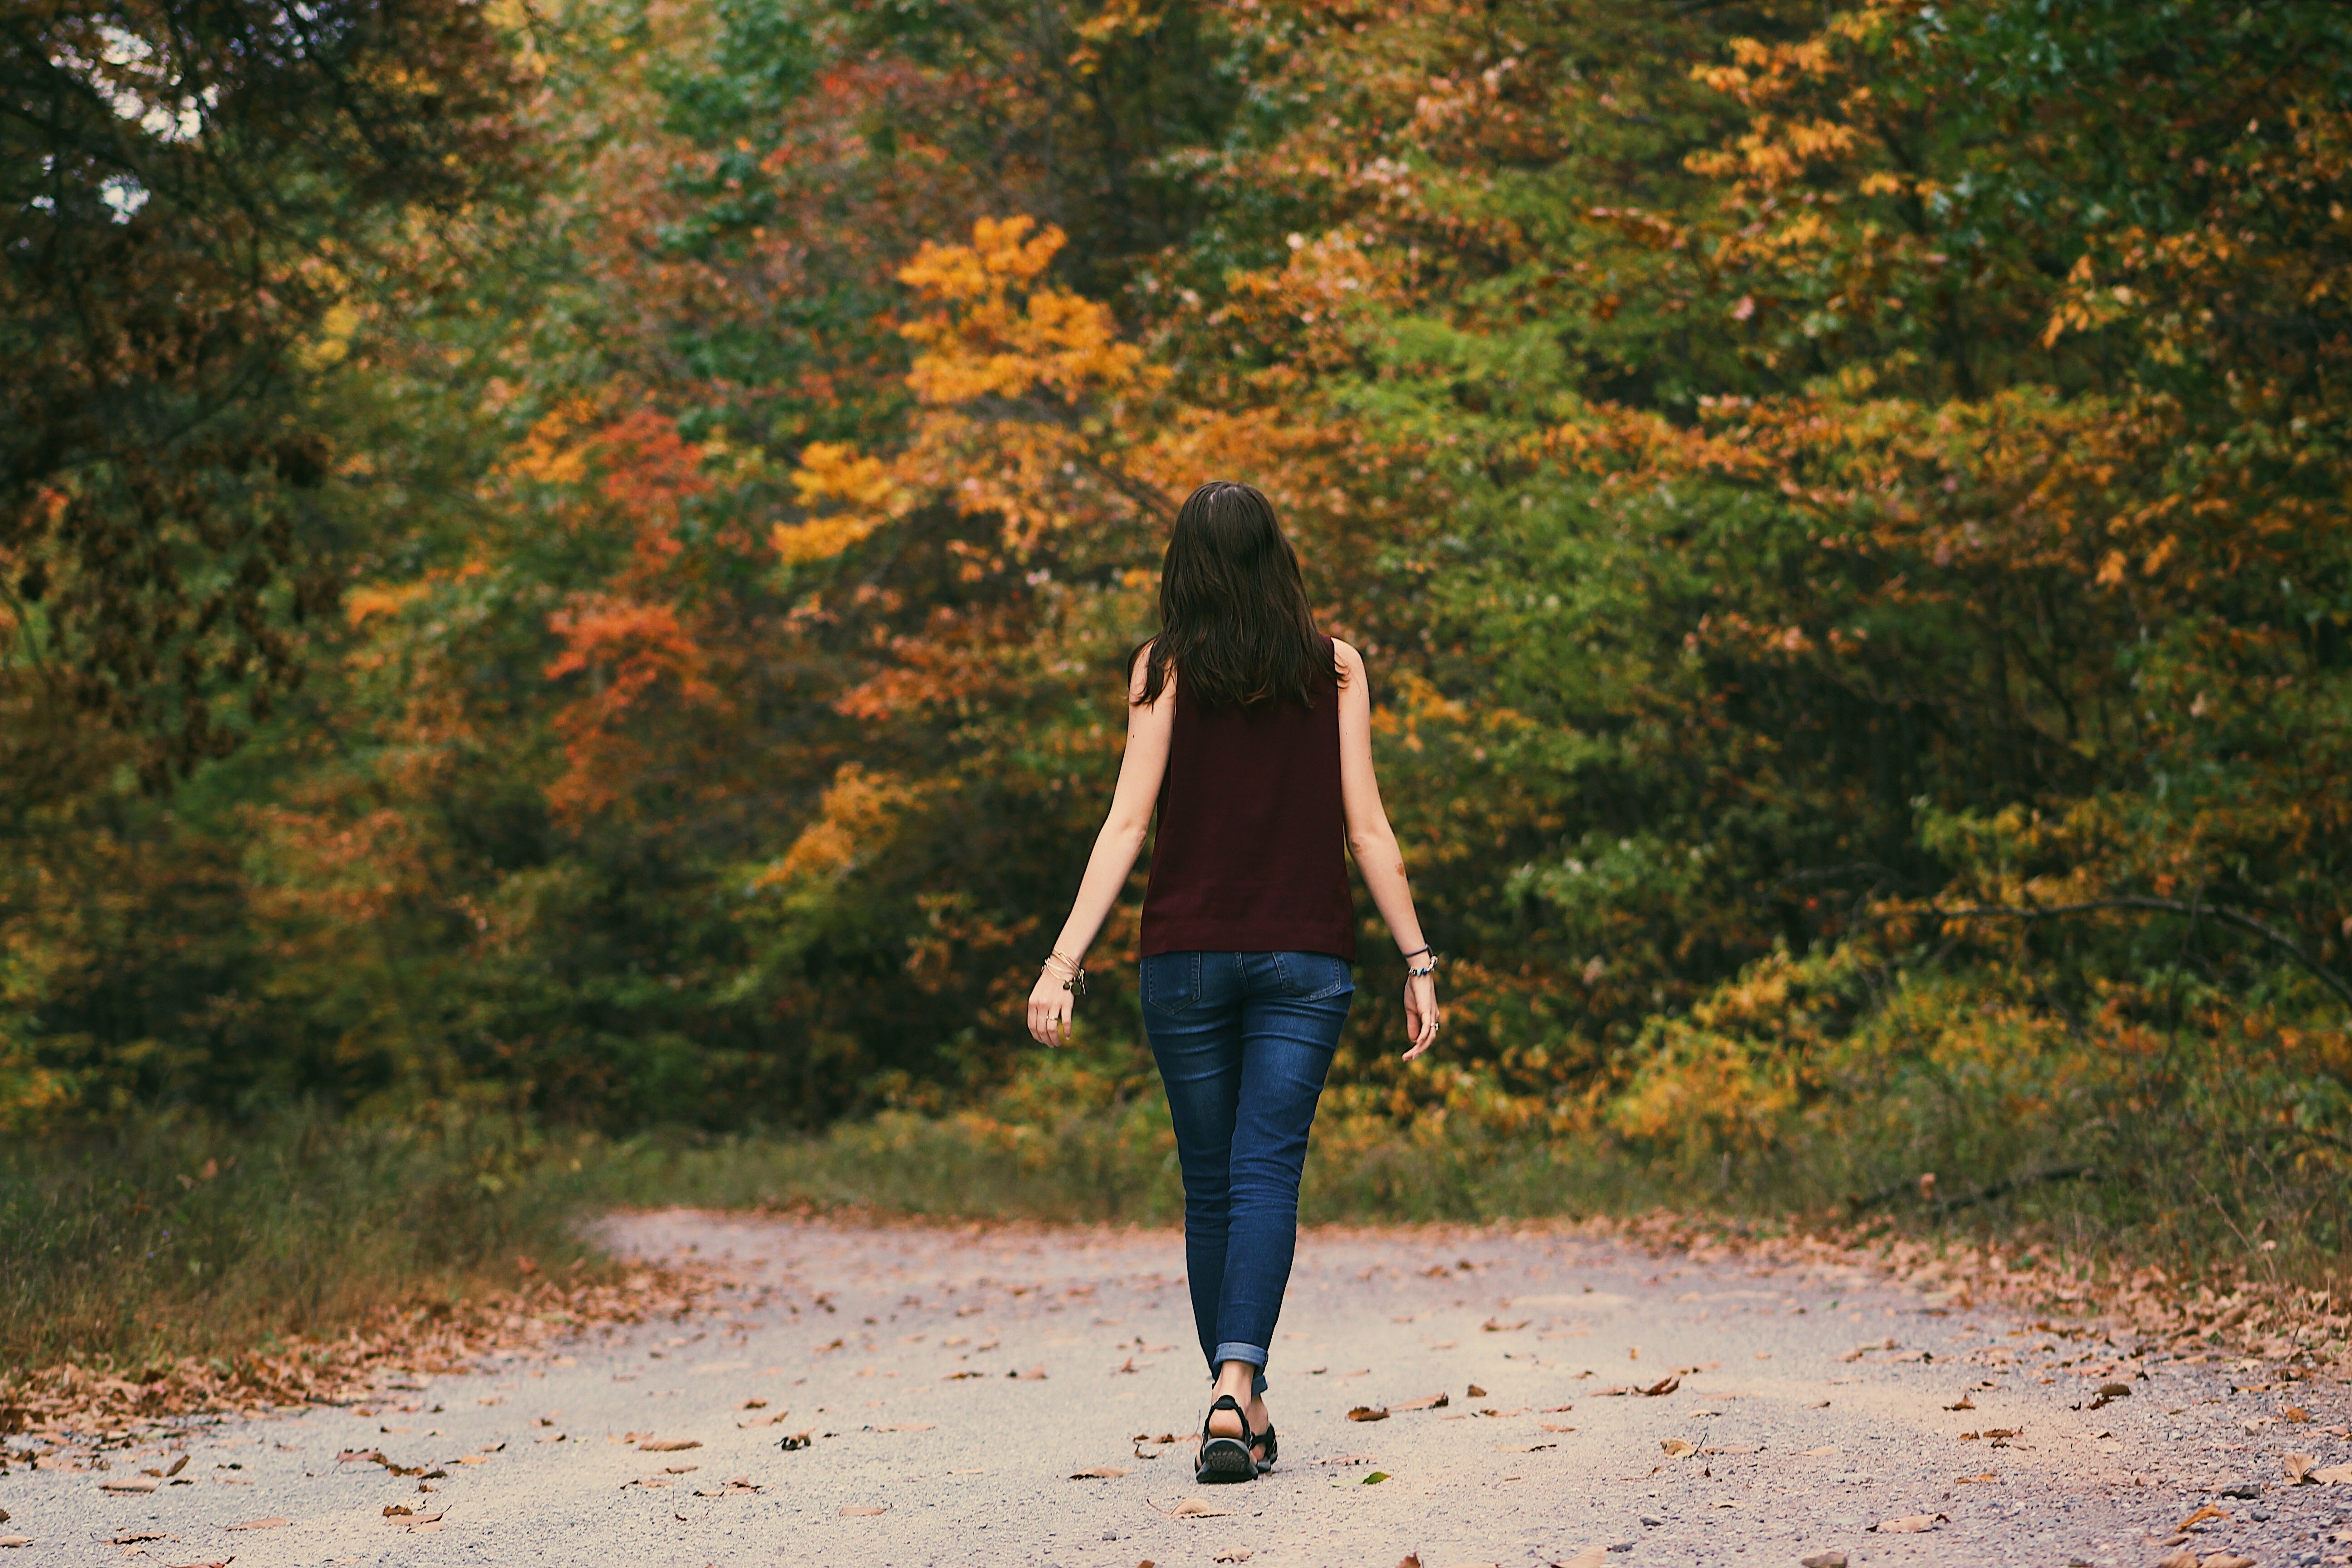 Christine ging durch den Wald, um zur Hütte ihrer Urgroßmutter zu gelangen. | Quelle: Pexels